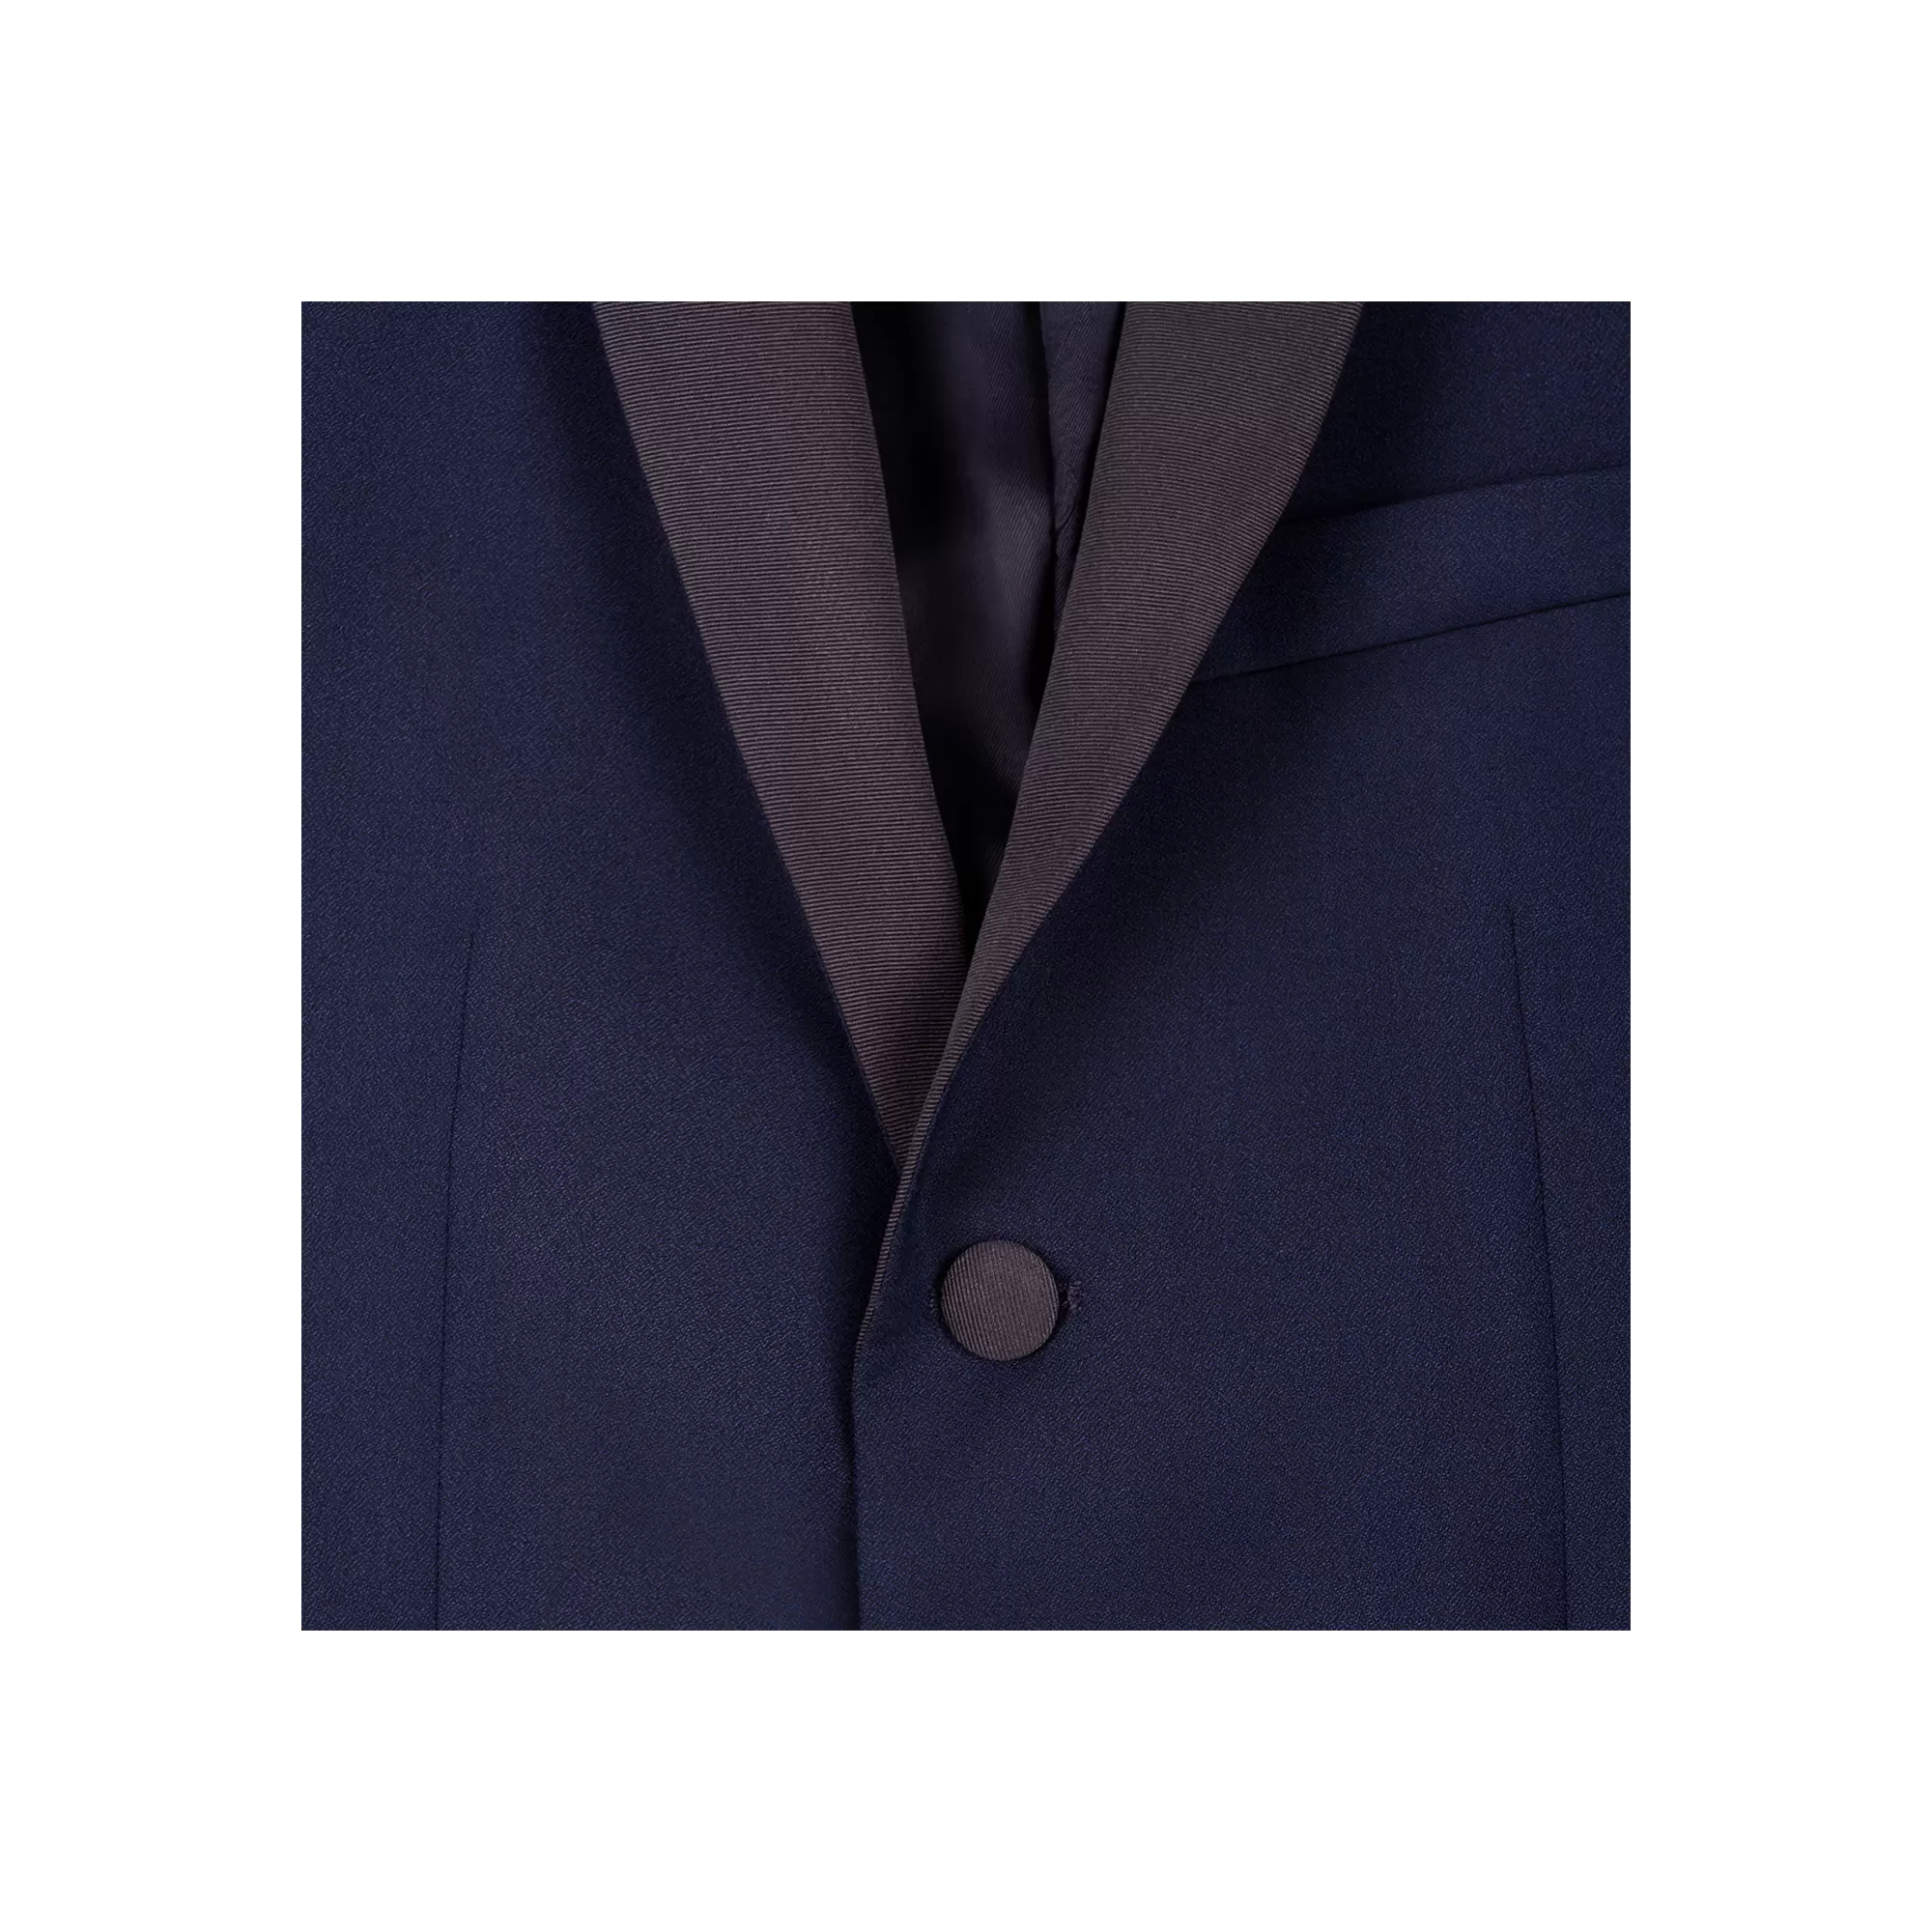 Ανδρικό Κοστούμι Σμόκιν Με Γιλέκο Μπλε Tailor Italian Wear